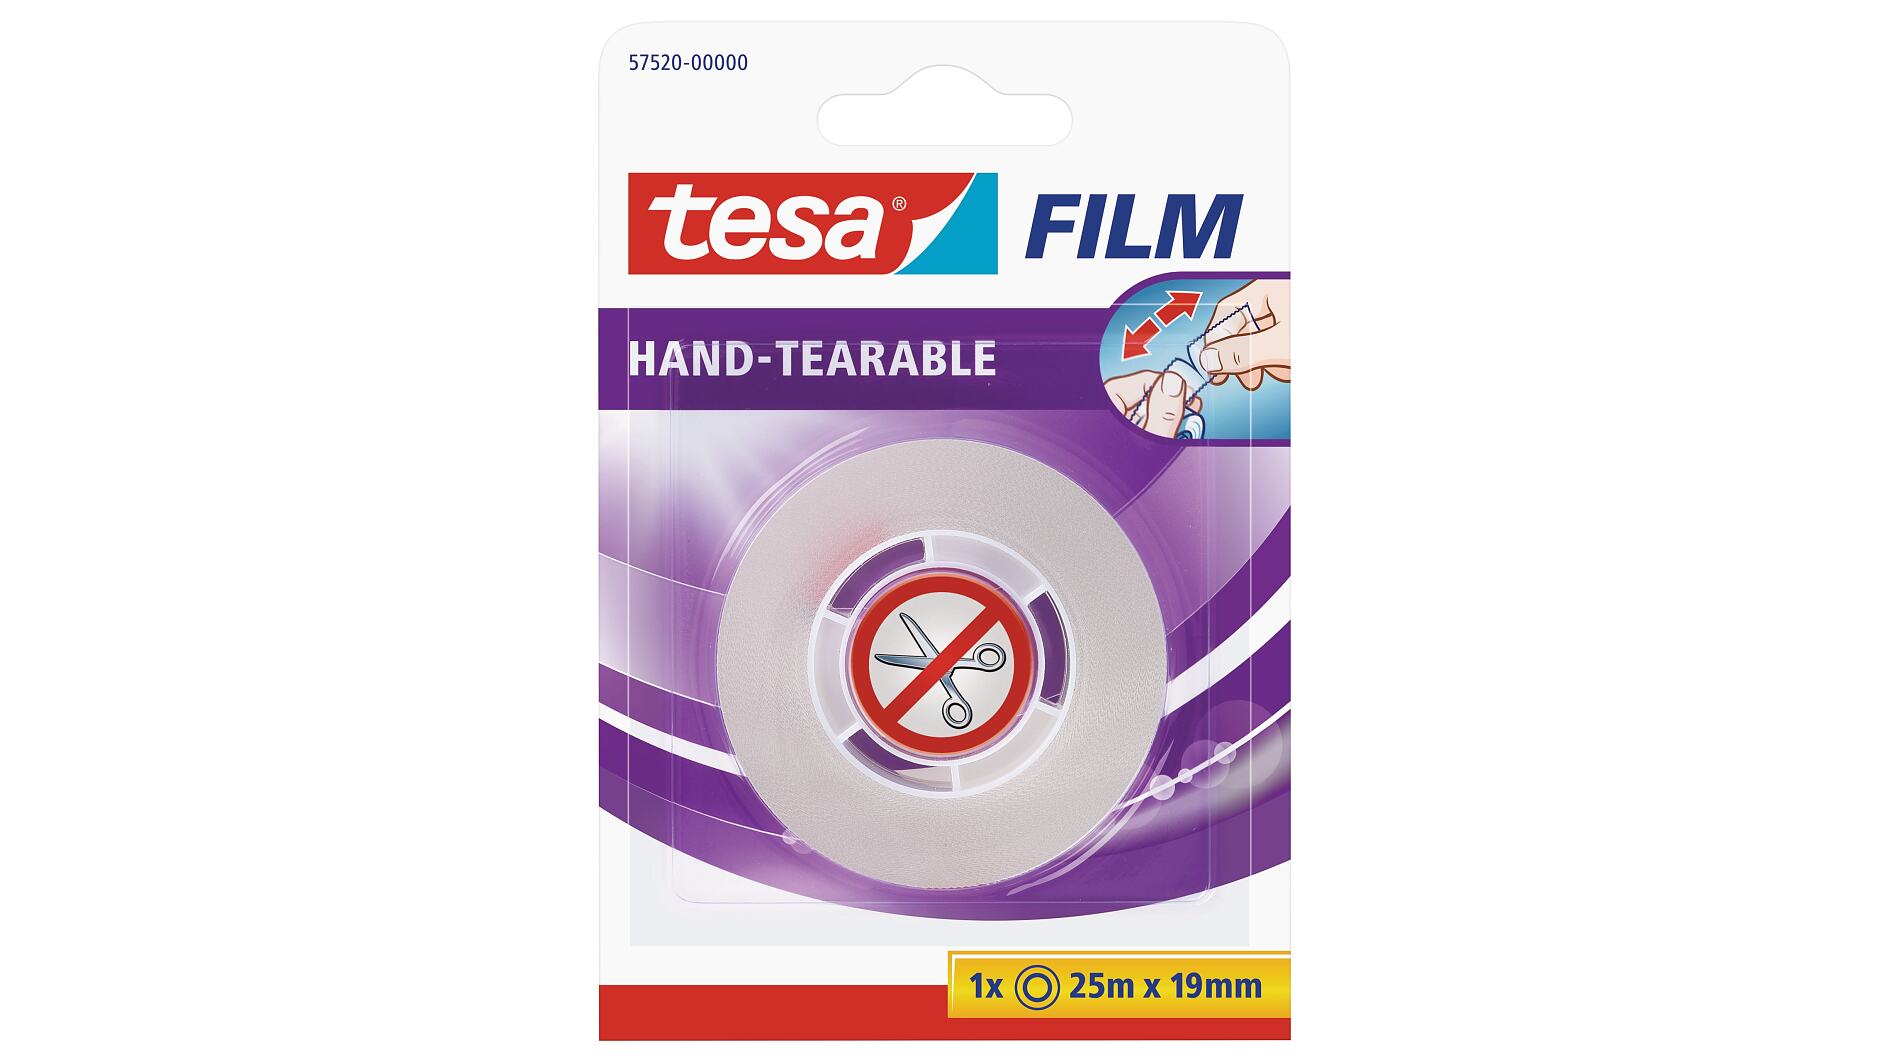 Tesa Tesa bande adhésive double face, 50 mm/25 m, universel (TESAFI4934) -  Landefeld - pneumatique - hydraulique - équipements industriels